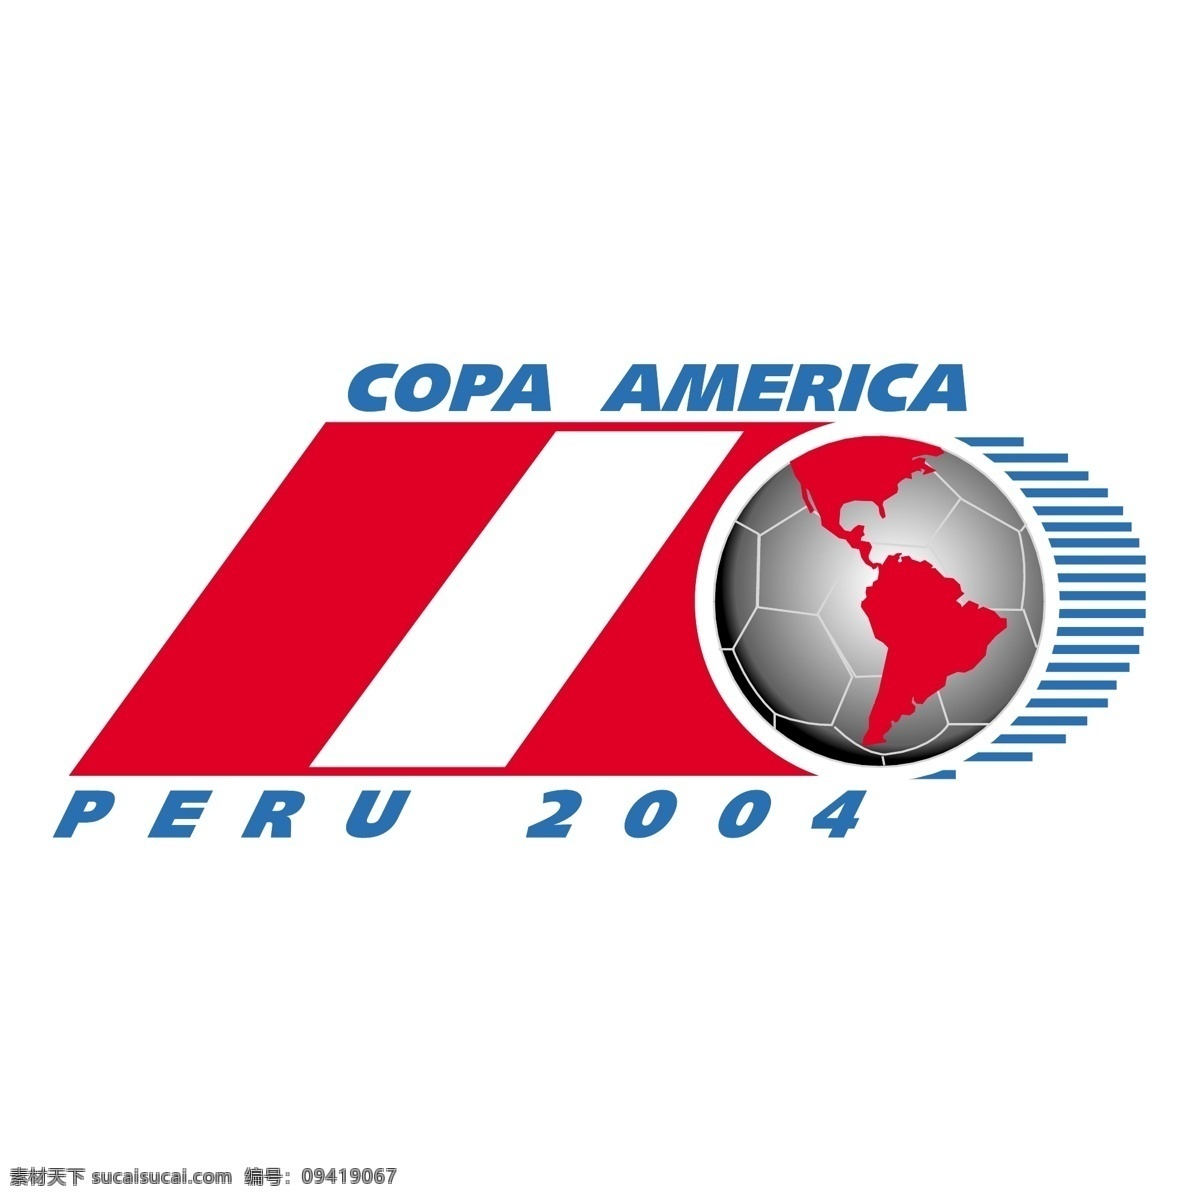 美国 秘鲁 2004 杯 杯杯美国 矢量 美国杯 秘鲁美国杯 向量 量杯 标志 标志美国杯 logo 美国秘鲁 矢量图 建筑家居